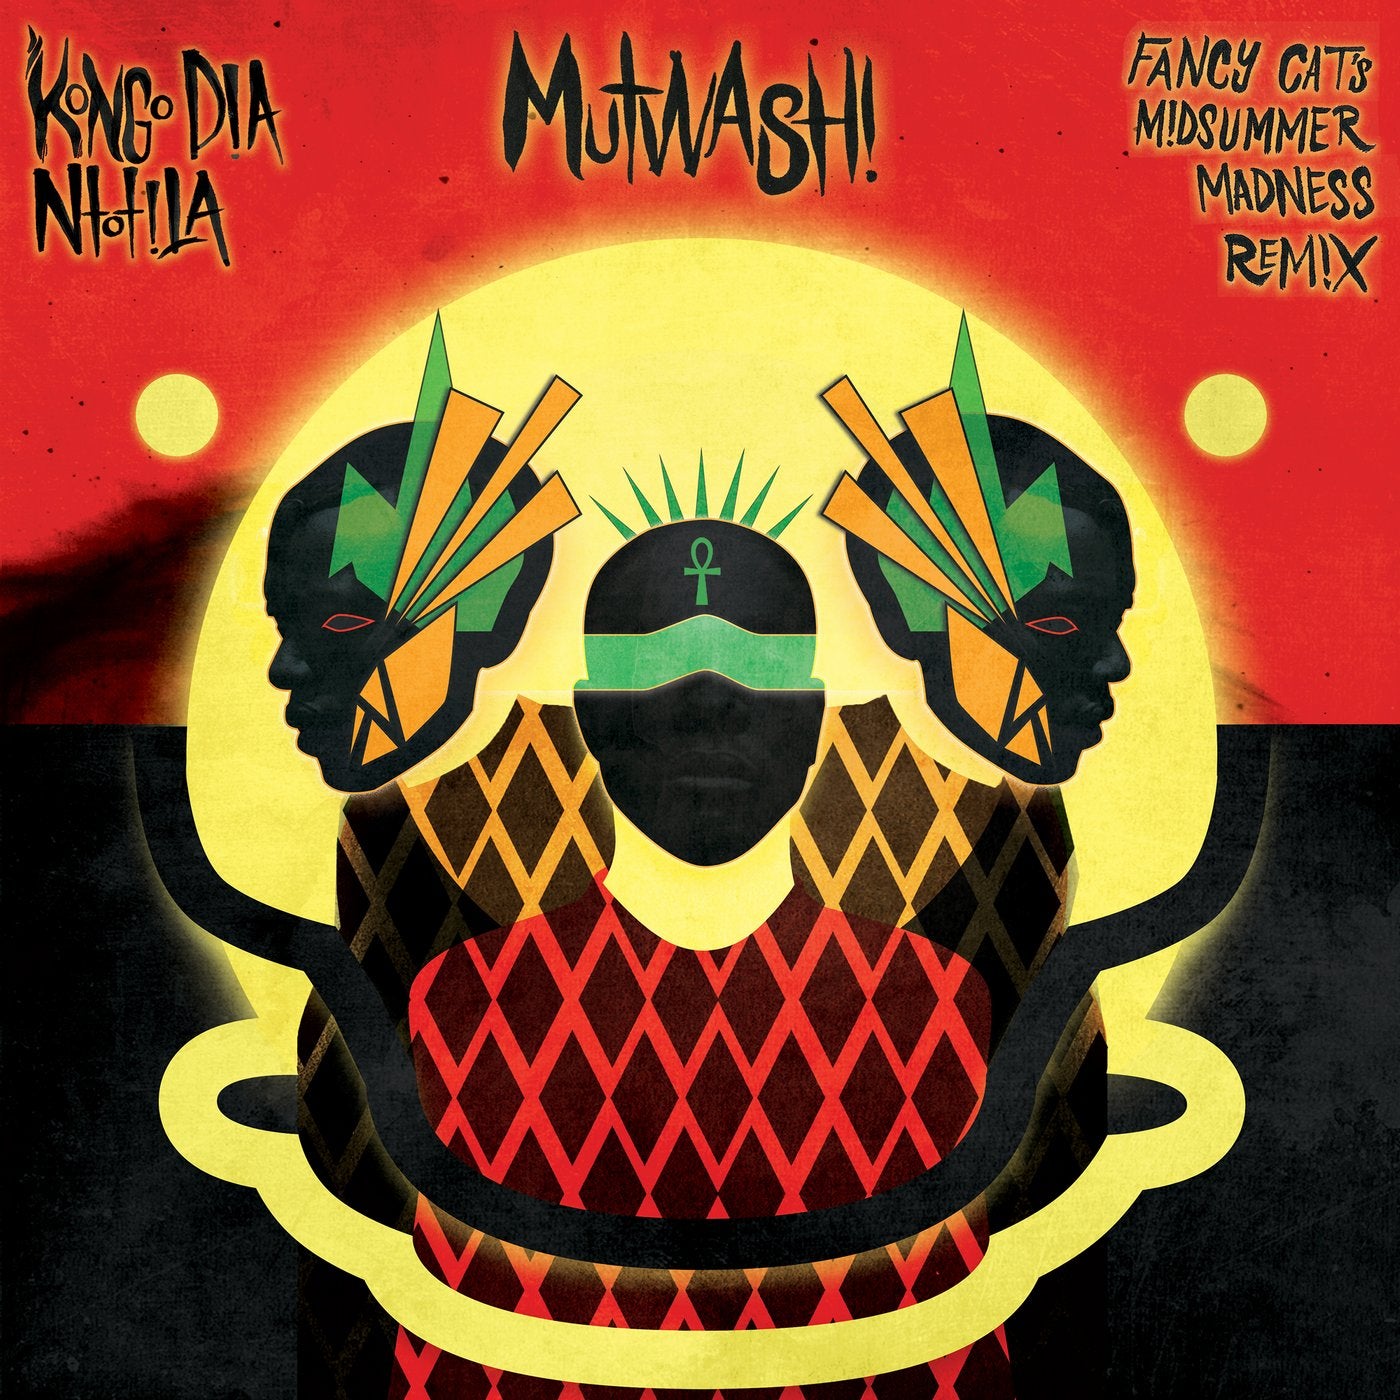 Mutwashi - Fancy Cats Midsummers Madness Remix